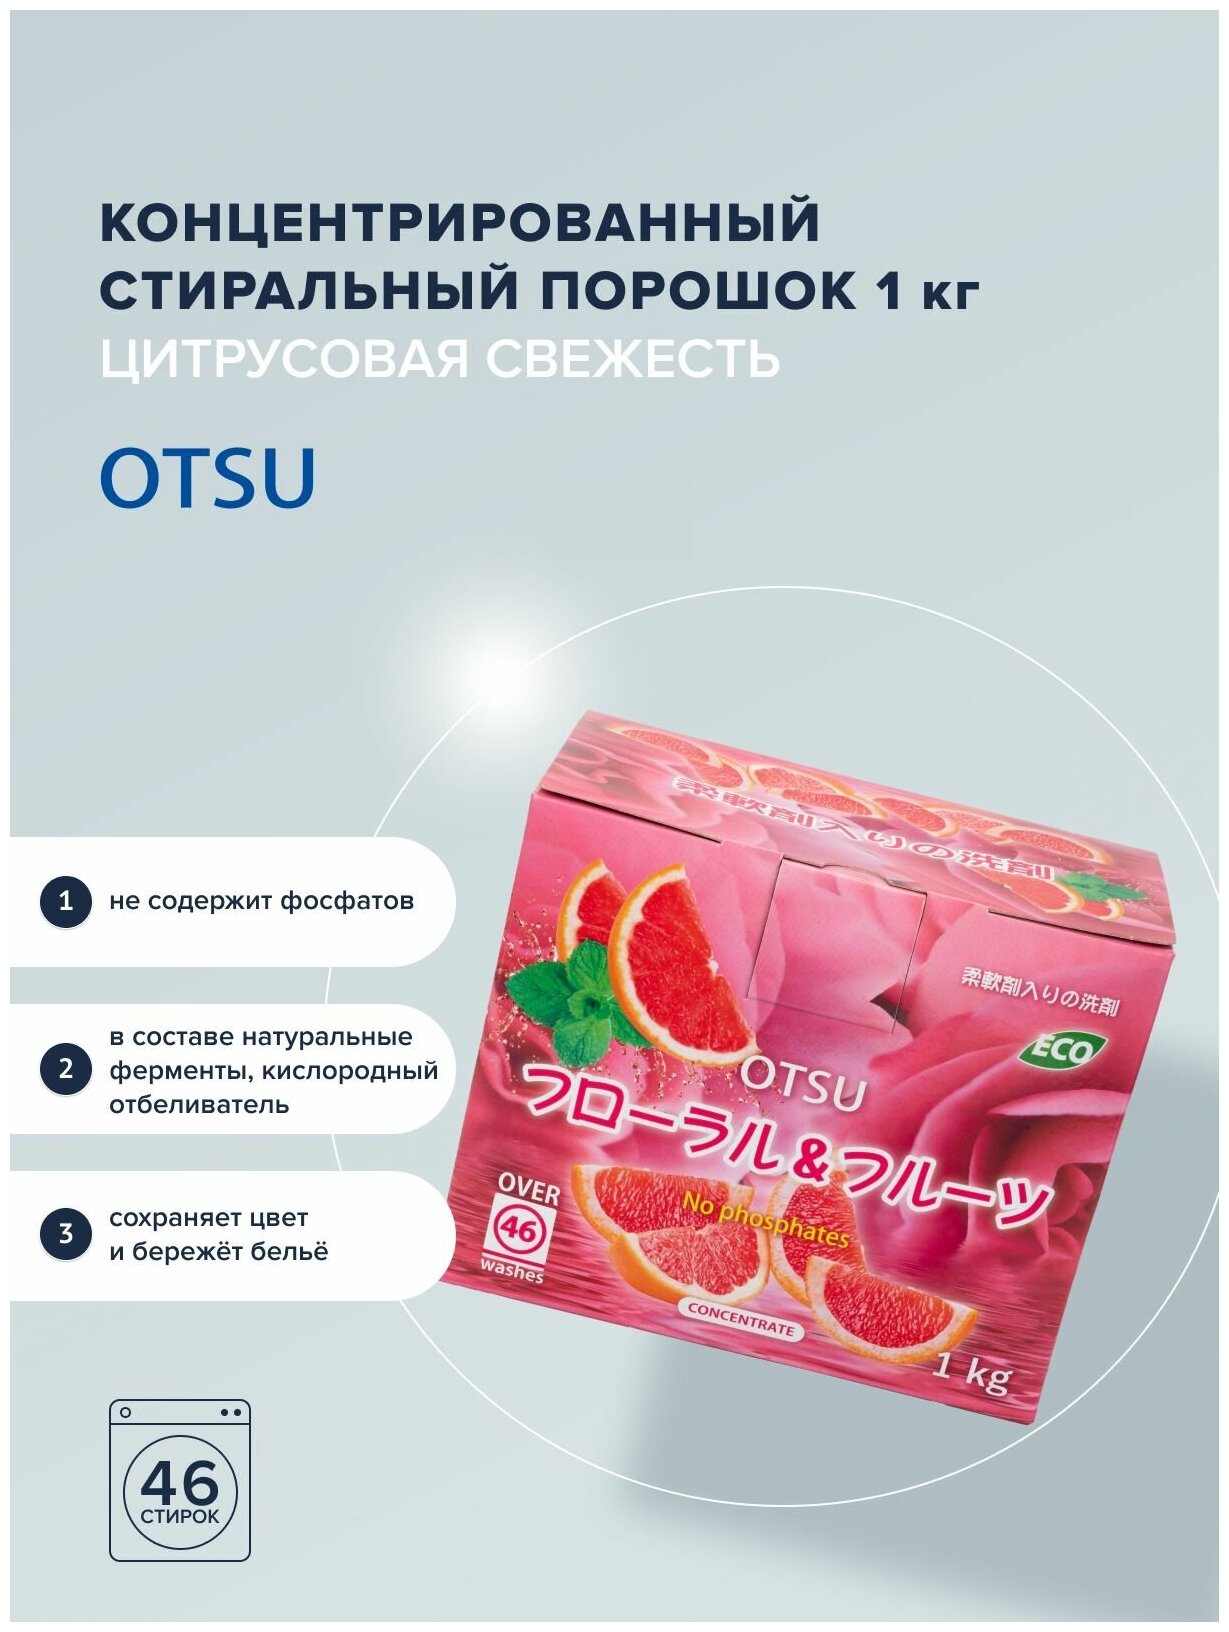 OTSU Стиральный порошок на основе растительных компонентов без фосфатов с силой кислорода и натуральным ароматом свежих цитрусов 1 кг на 46 стирок